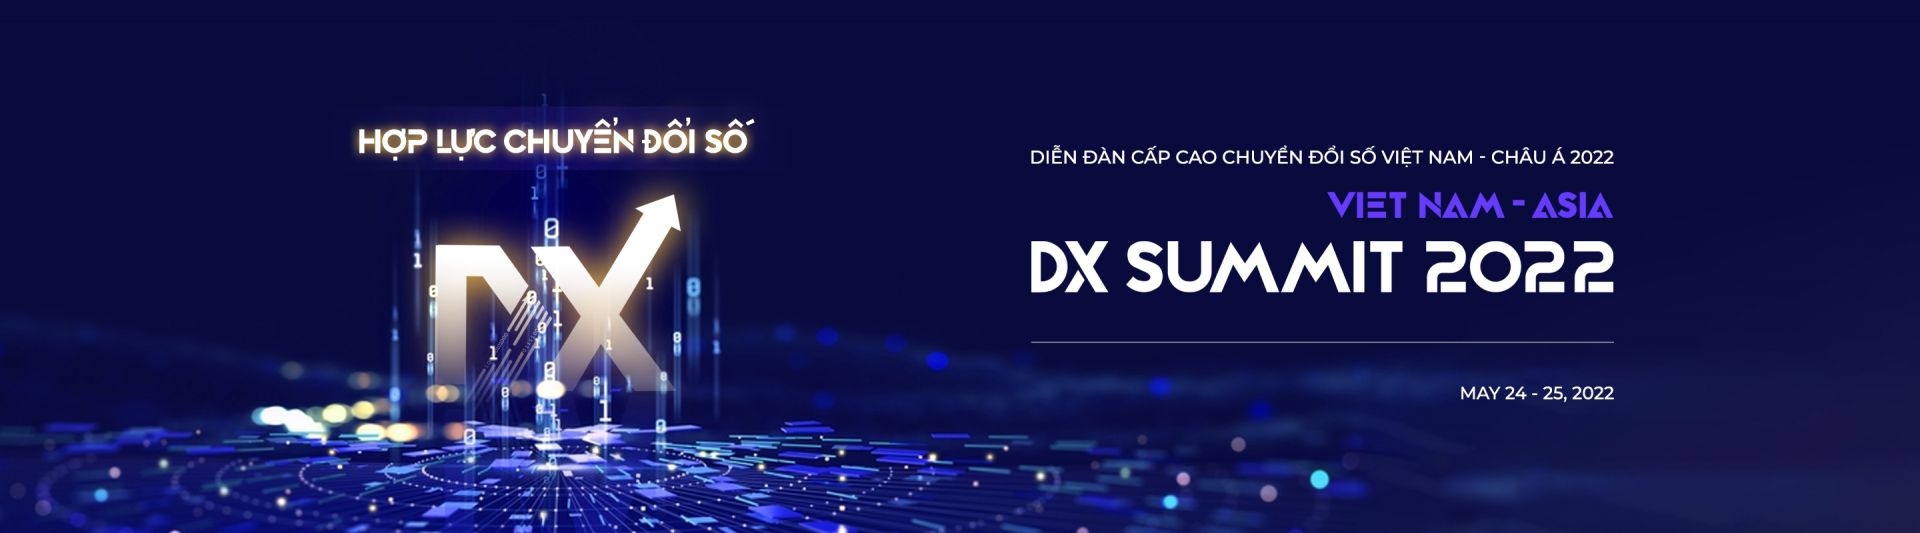 Vietnam - Asia DX Summit 2022